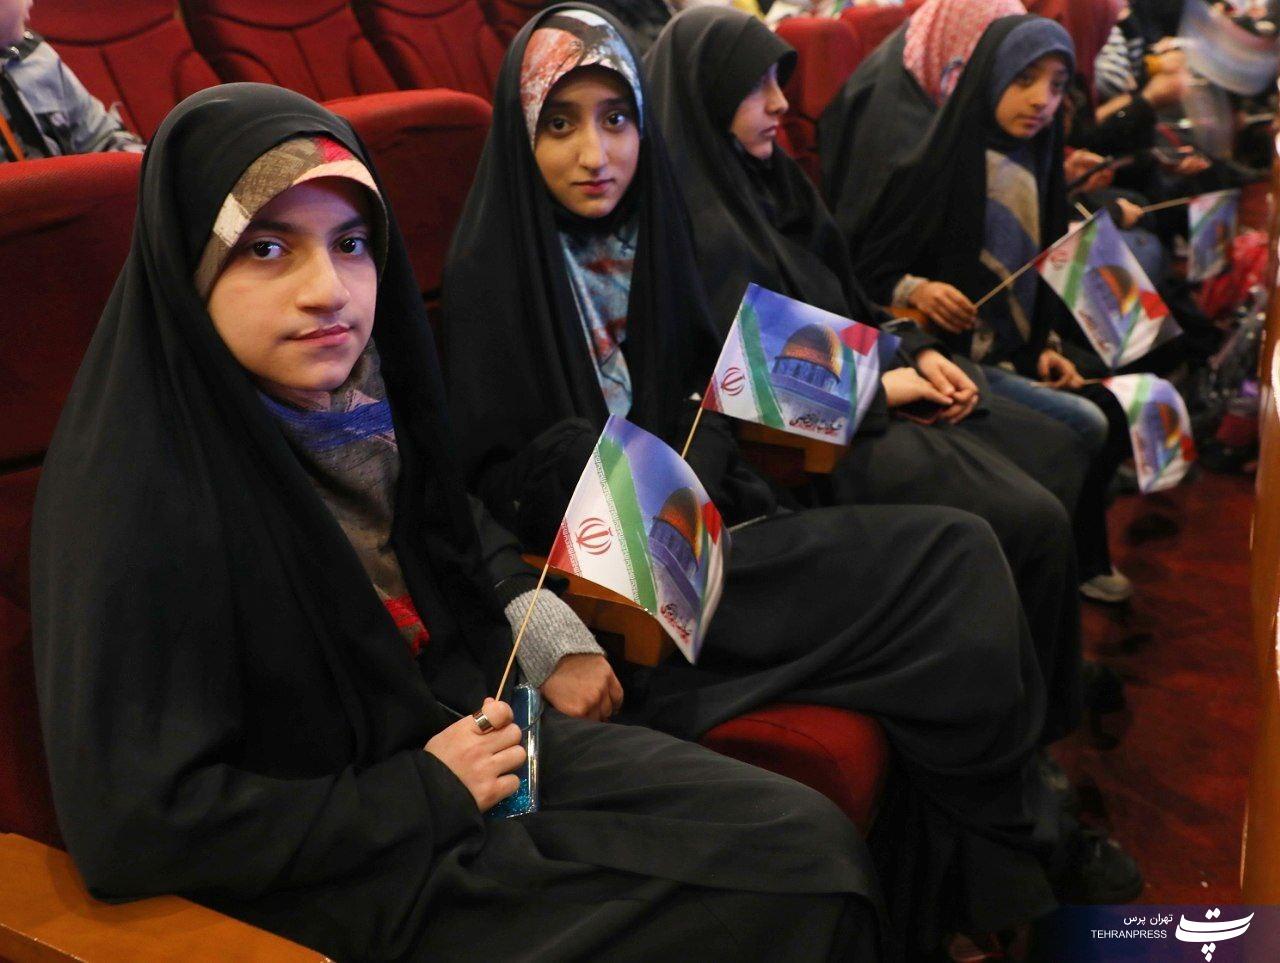 تهران میزبان برگزاری یادواره کودکان شهید غزه